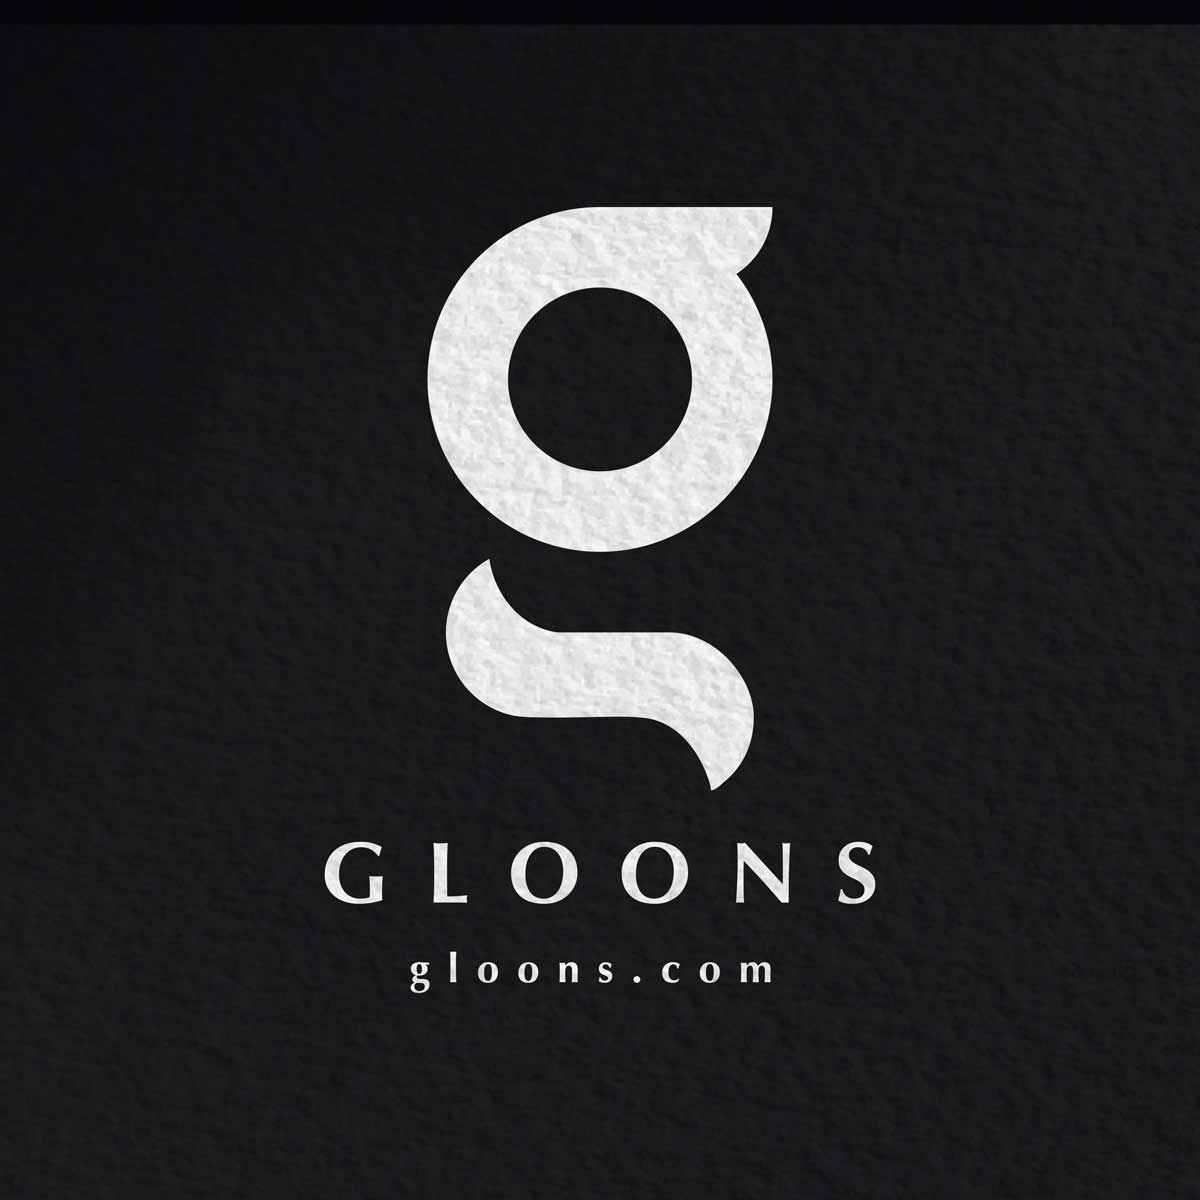 Gloons - Branding design by Brandizle